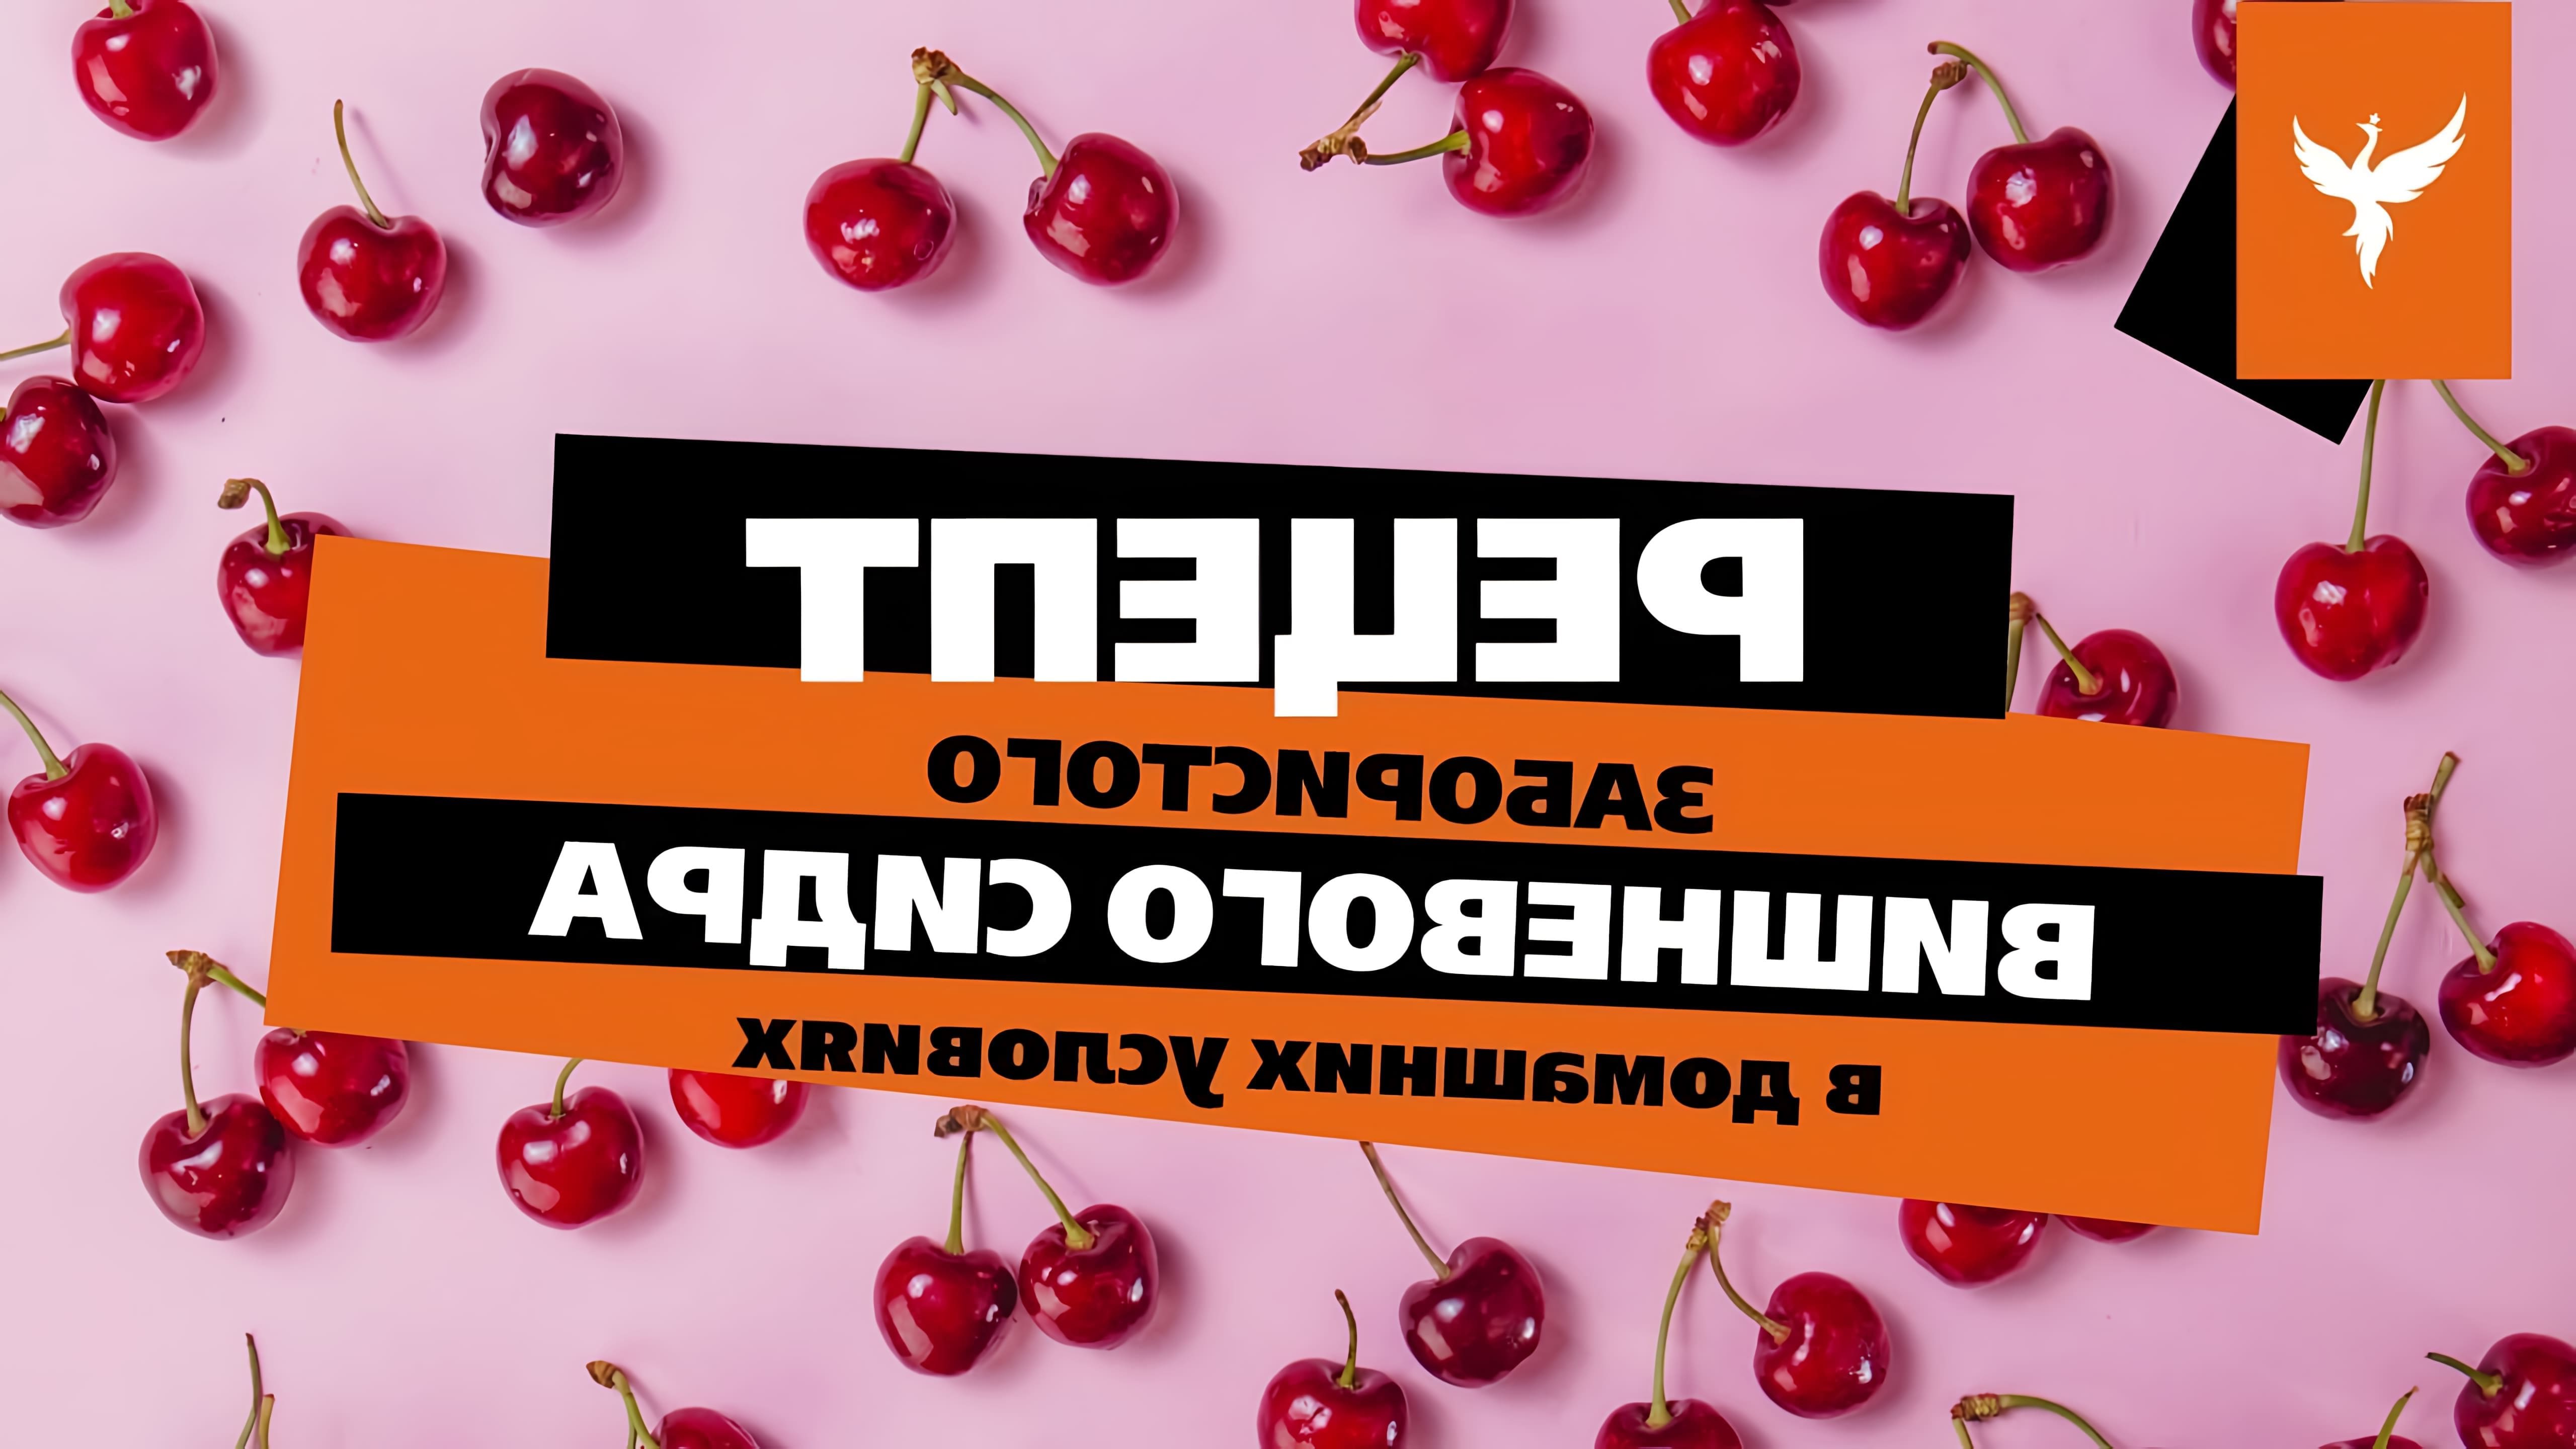 В этом видео Дмитрий Лафетников, ведущий информационного канала производственной компании "Добрый жар", рассказывает о рецепте приготовления вишневого сидра в домашних условиях